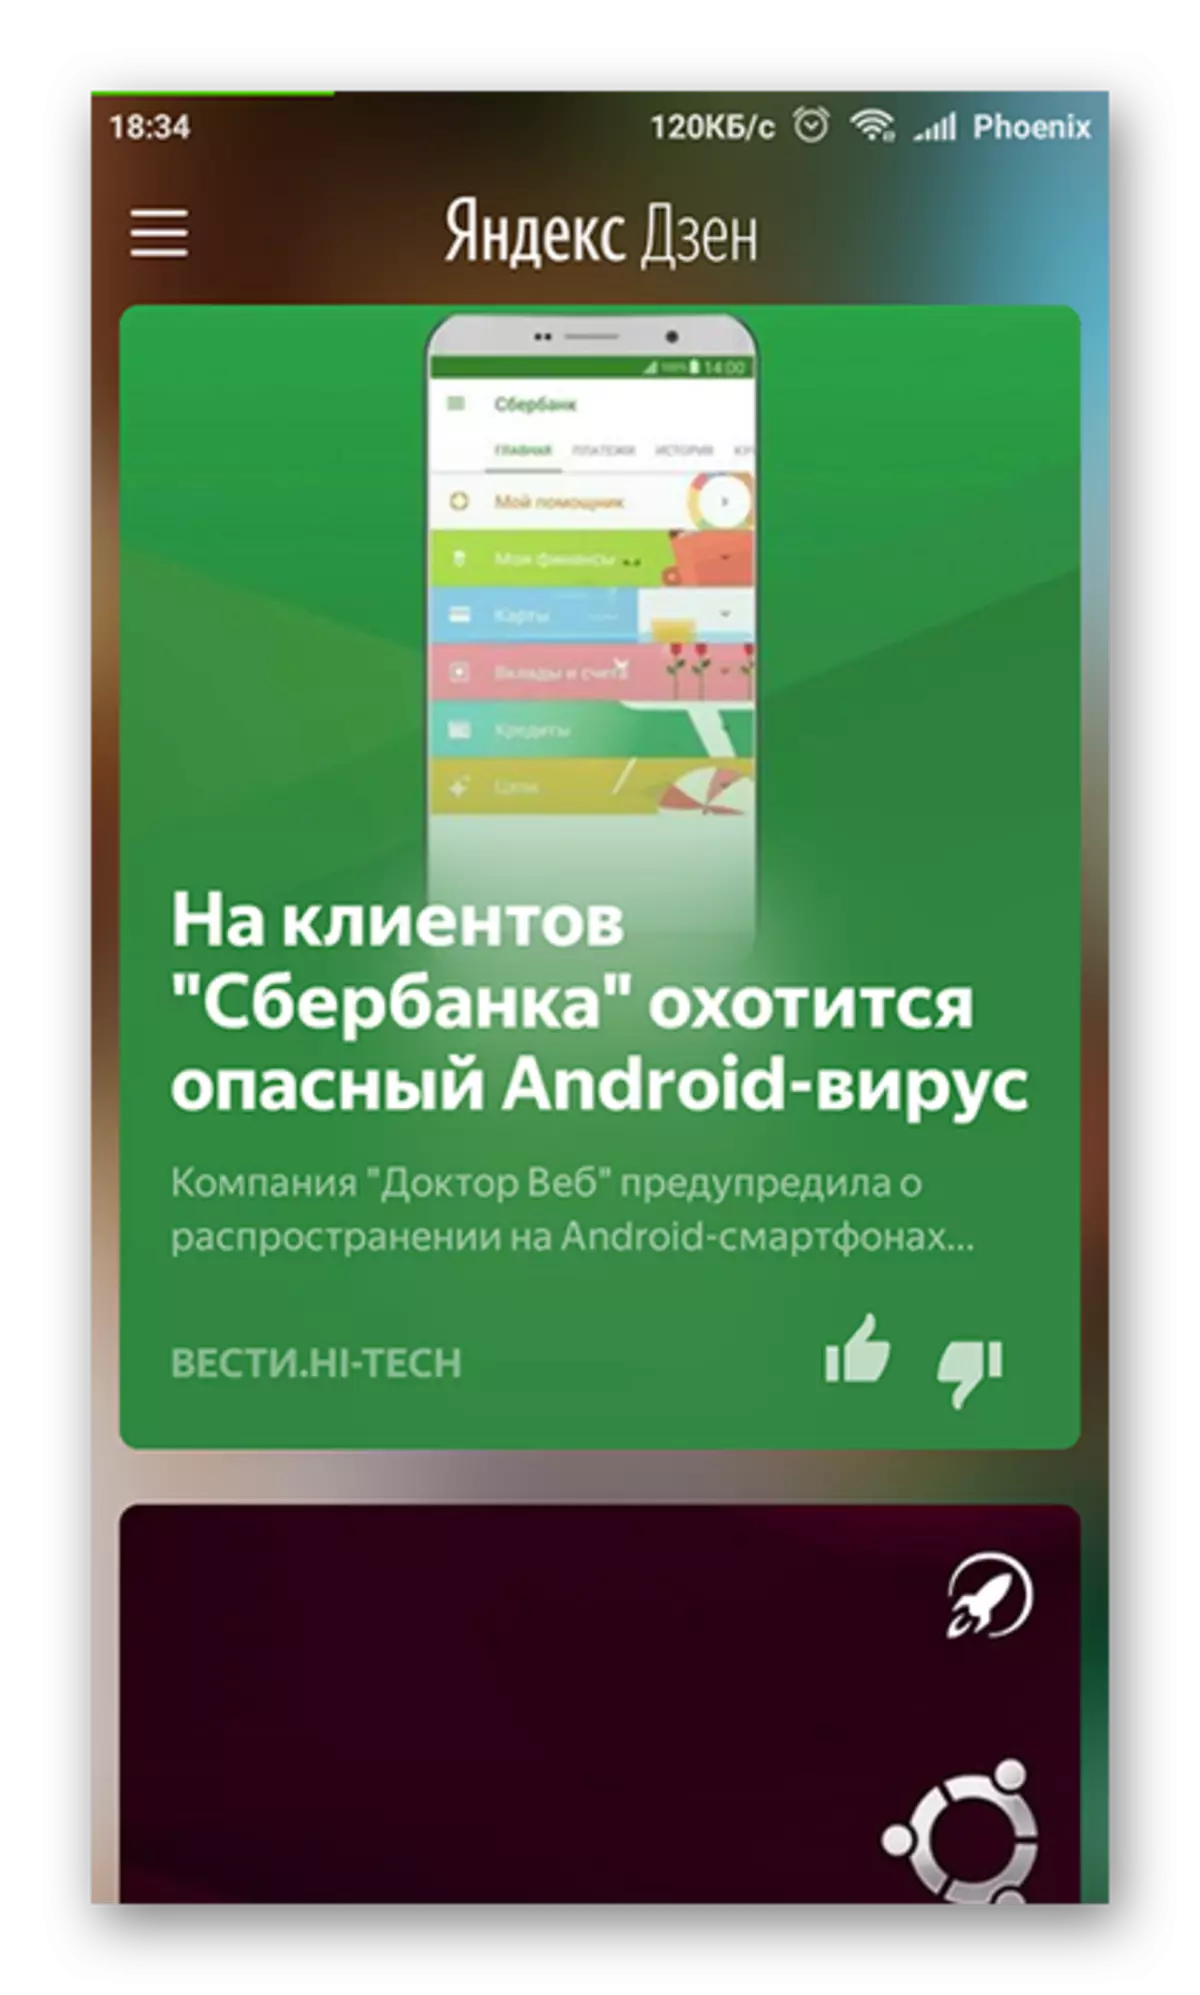 Awọn iṣeduro ti ara ẹni Yandex.dzen lori Android